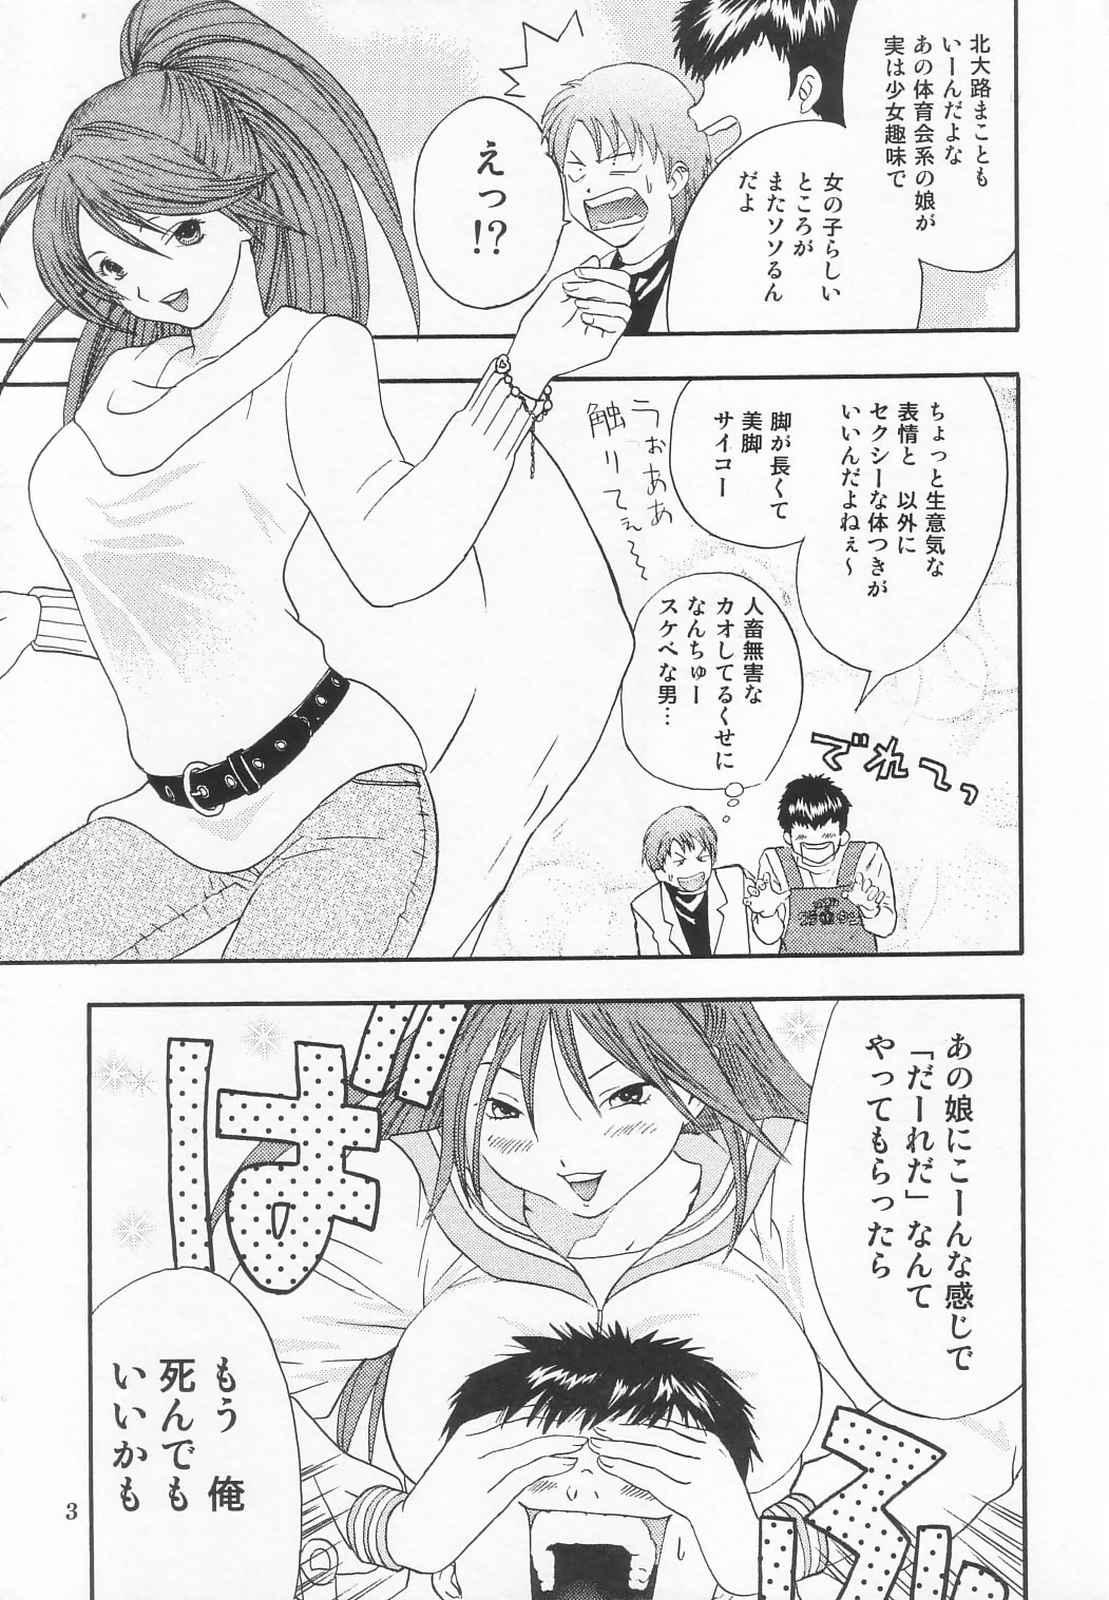 Messy Tokusatsu Magazine x 2003 Fuyu Gou - Sailor moon Ichigo 100 No Condom - Page 5